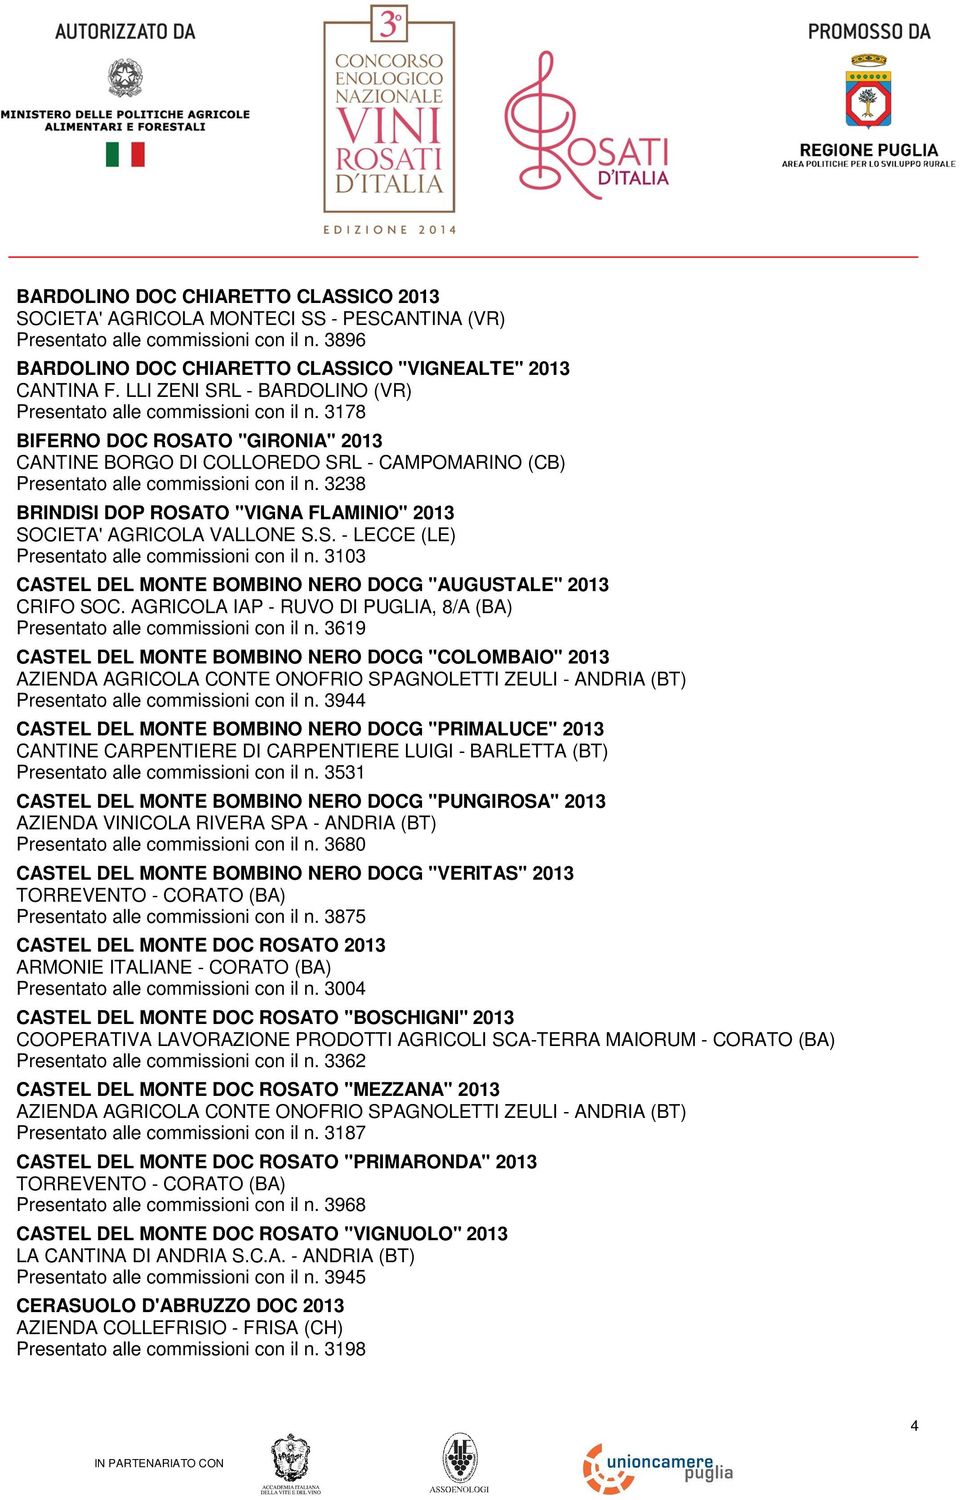 3238 BRINDISI DOP ROSATO "VIGNA FLAMINIO" 2013 SOCIETA' AGRICOLA VALLONE S.S. - LECCE (LE) Presentato alle commissioni con il n. 3103 CASTEL DEL MONTE BOMBINO NERO DOCG "AUGUSTALE" 2013 CRIFO SOC.